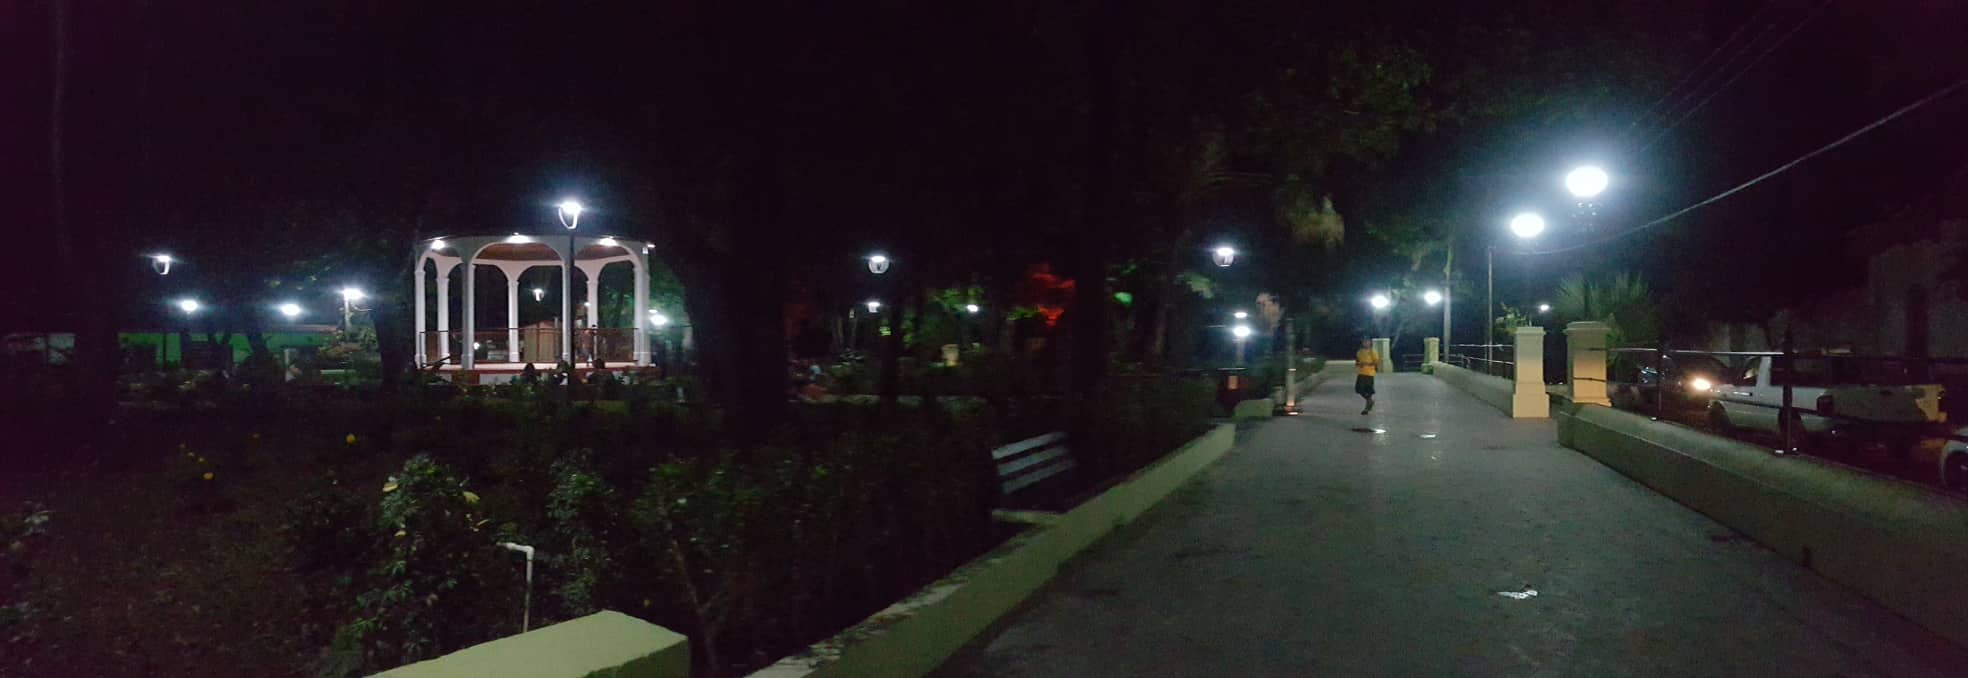 Parque noche 4